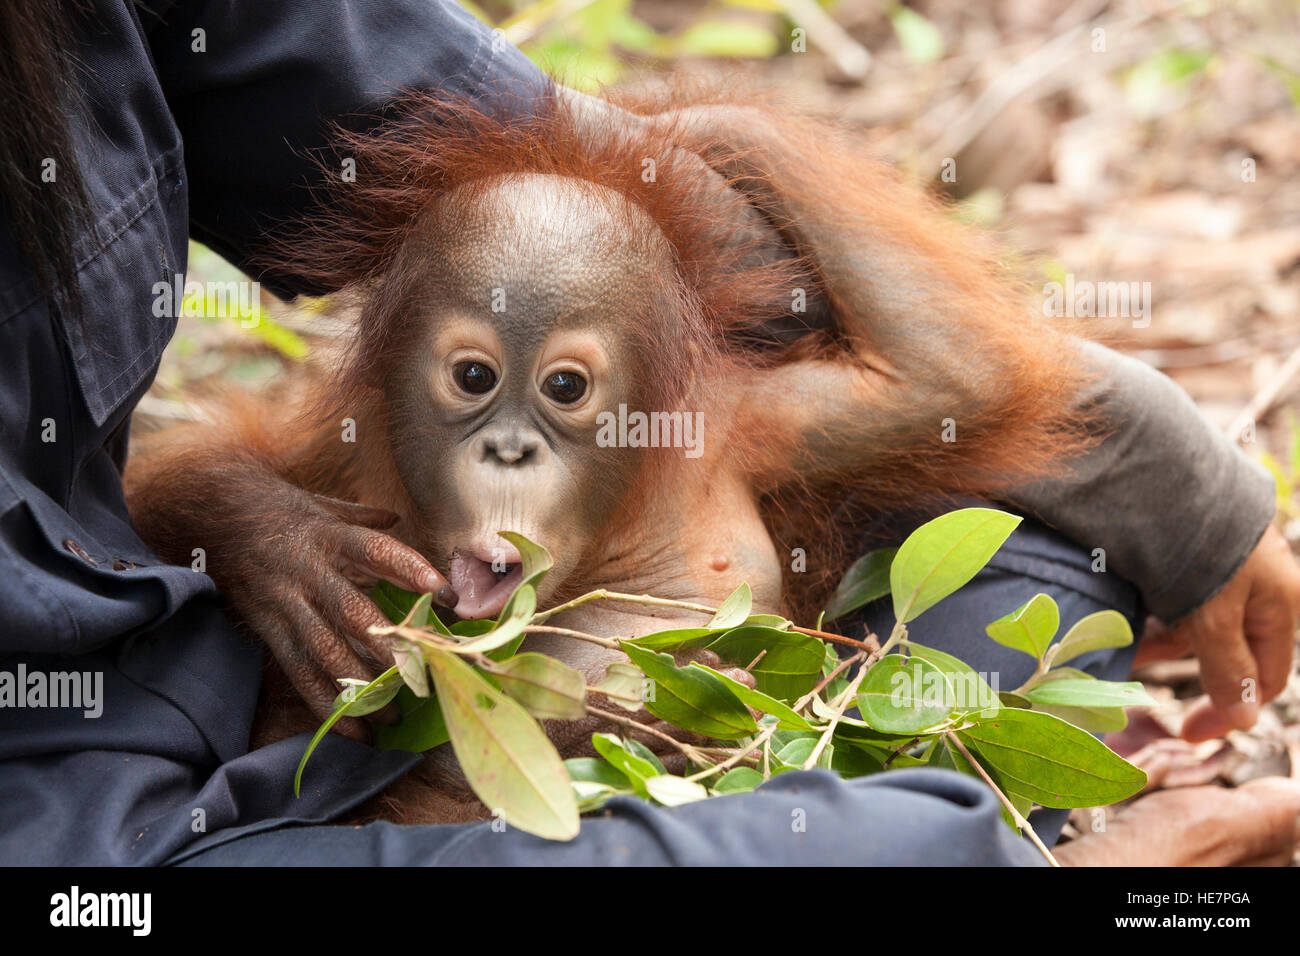 Curioso orangutan orfano bambino sul giro del guardiano giocando con le foglie nella sessione di addestramento della foresta per prepararsi per l'eventuale rilascio nel selvaggio, Borneo Foto Stock